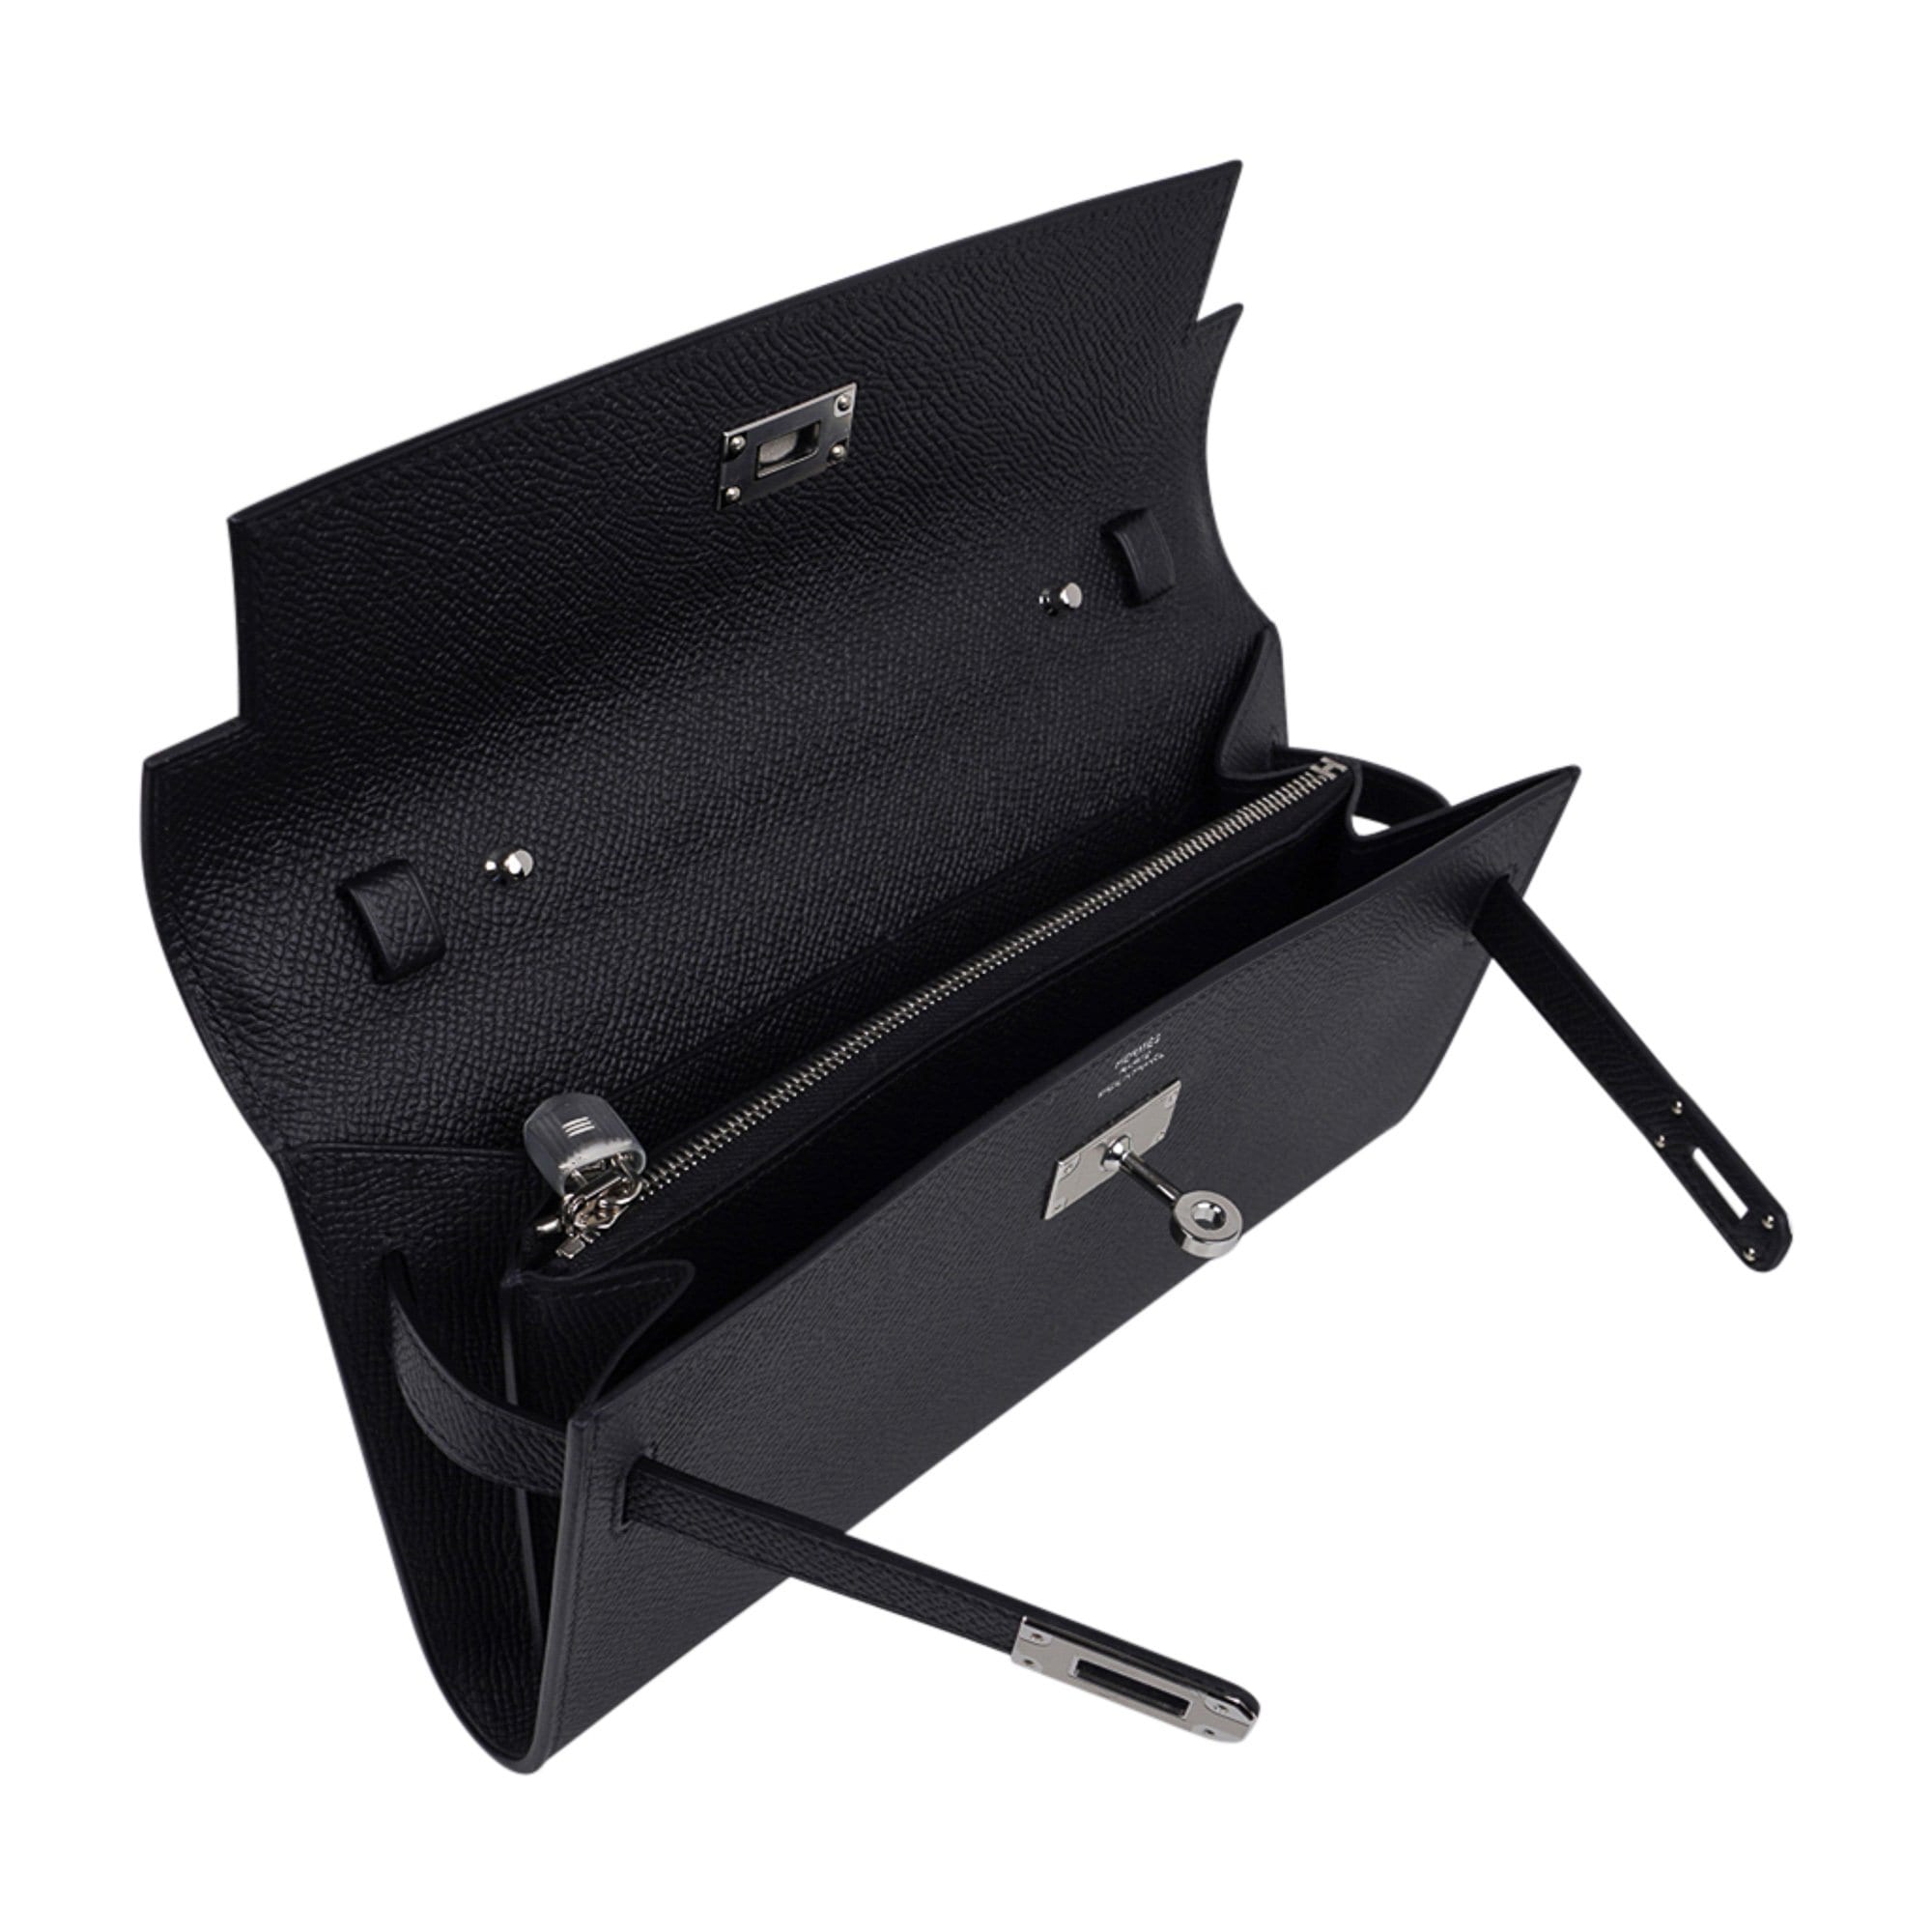 Hermes Kelly Depeche Bag 25cm Black Pochette Epsom Palladium Hardware